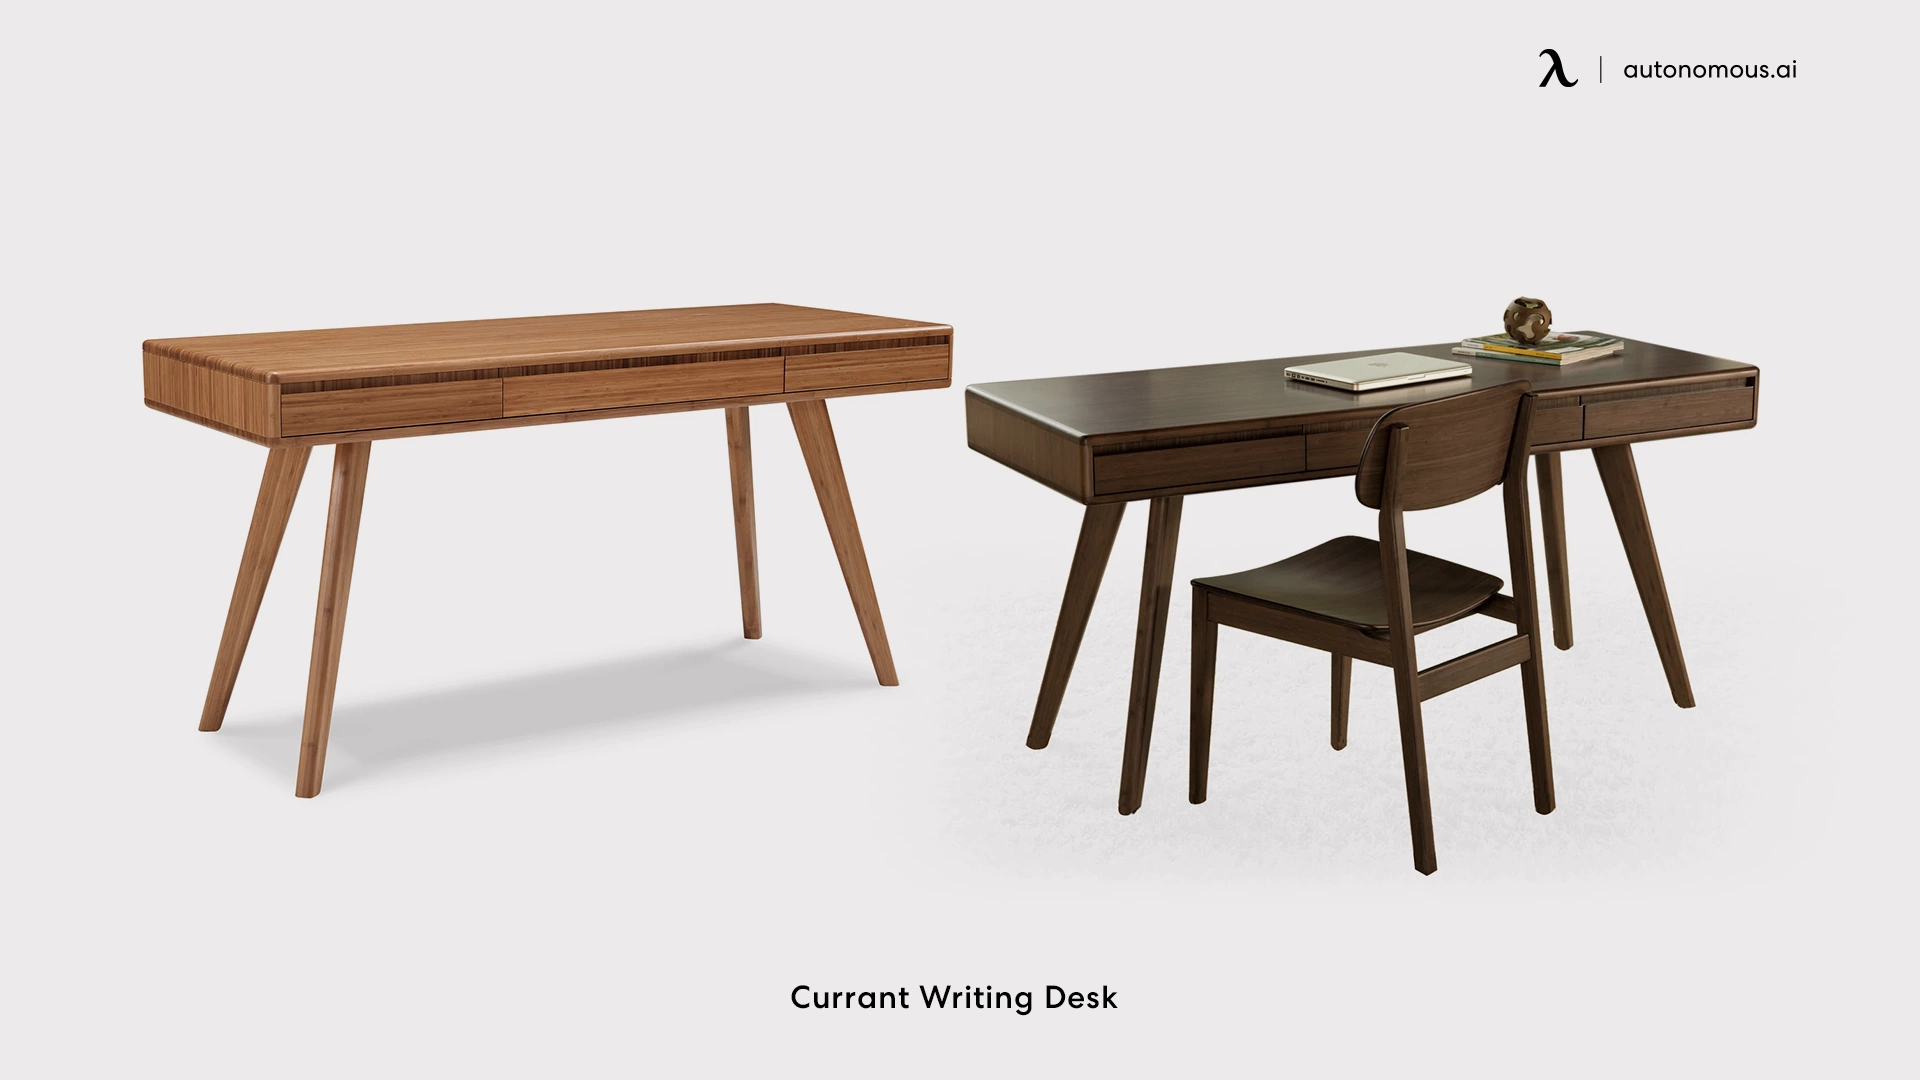 Currant Writing Desk contemporary desk